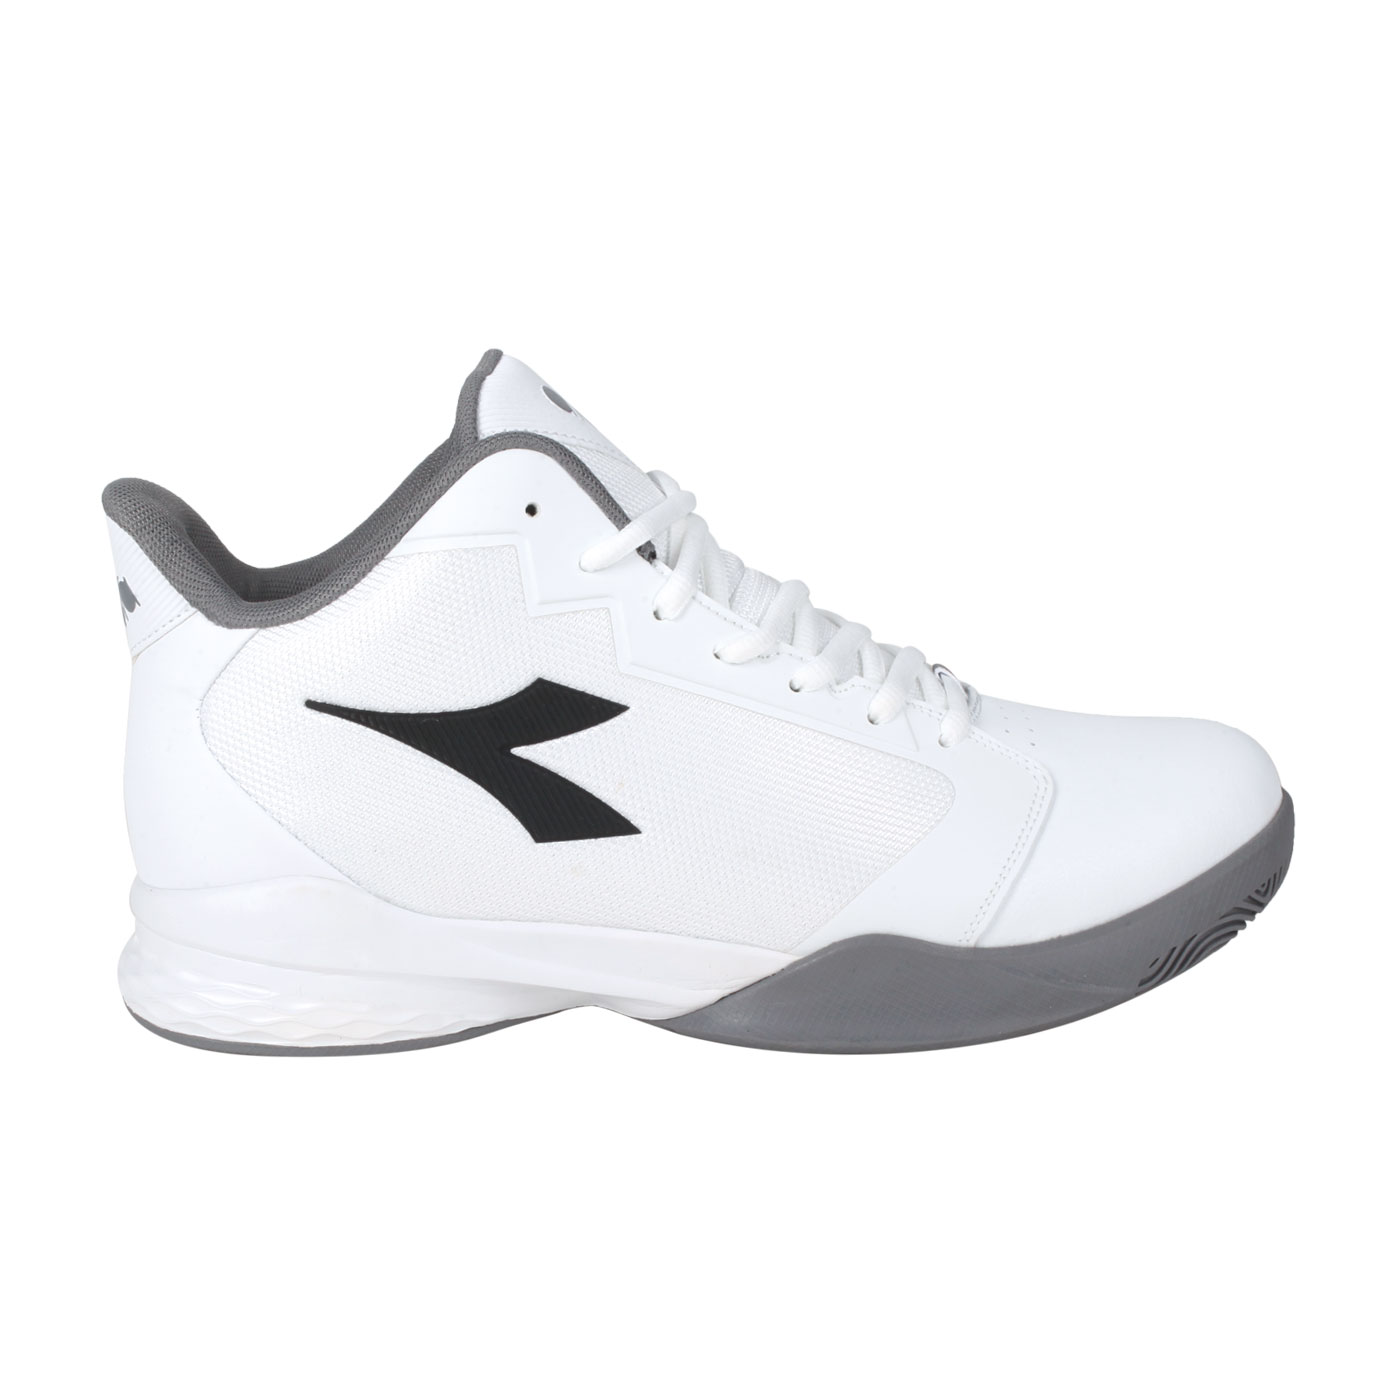 DIADORA 男專業籃球鞋-2E DA71283 - 白灰